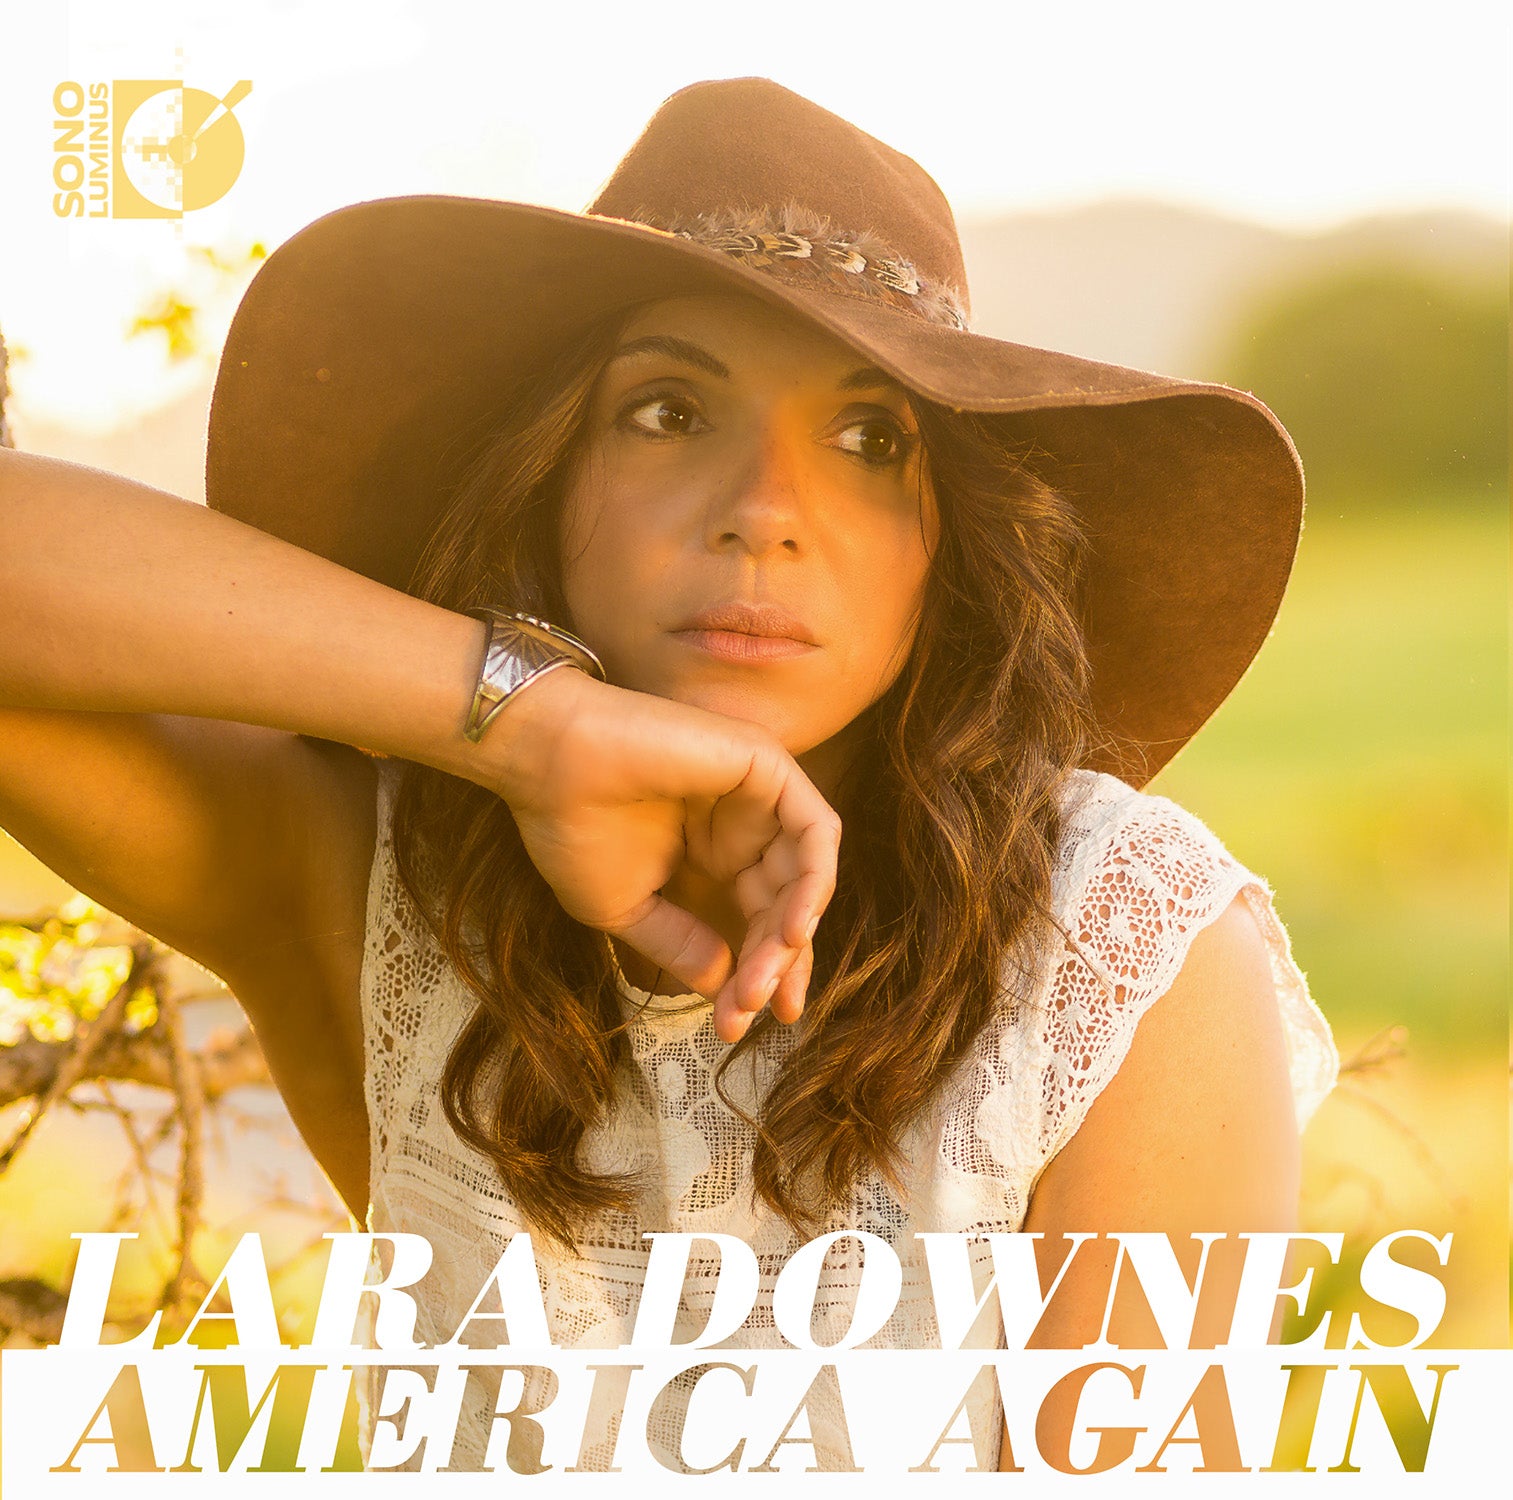 America Again / Lara Downes